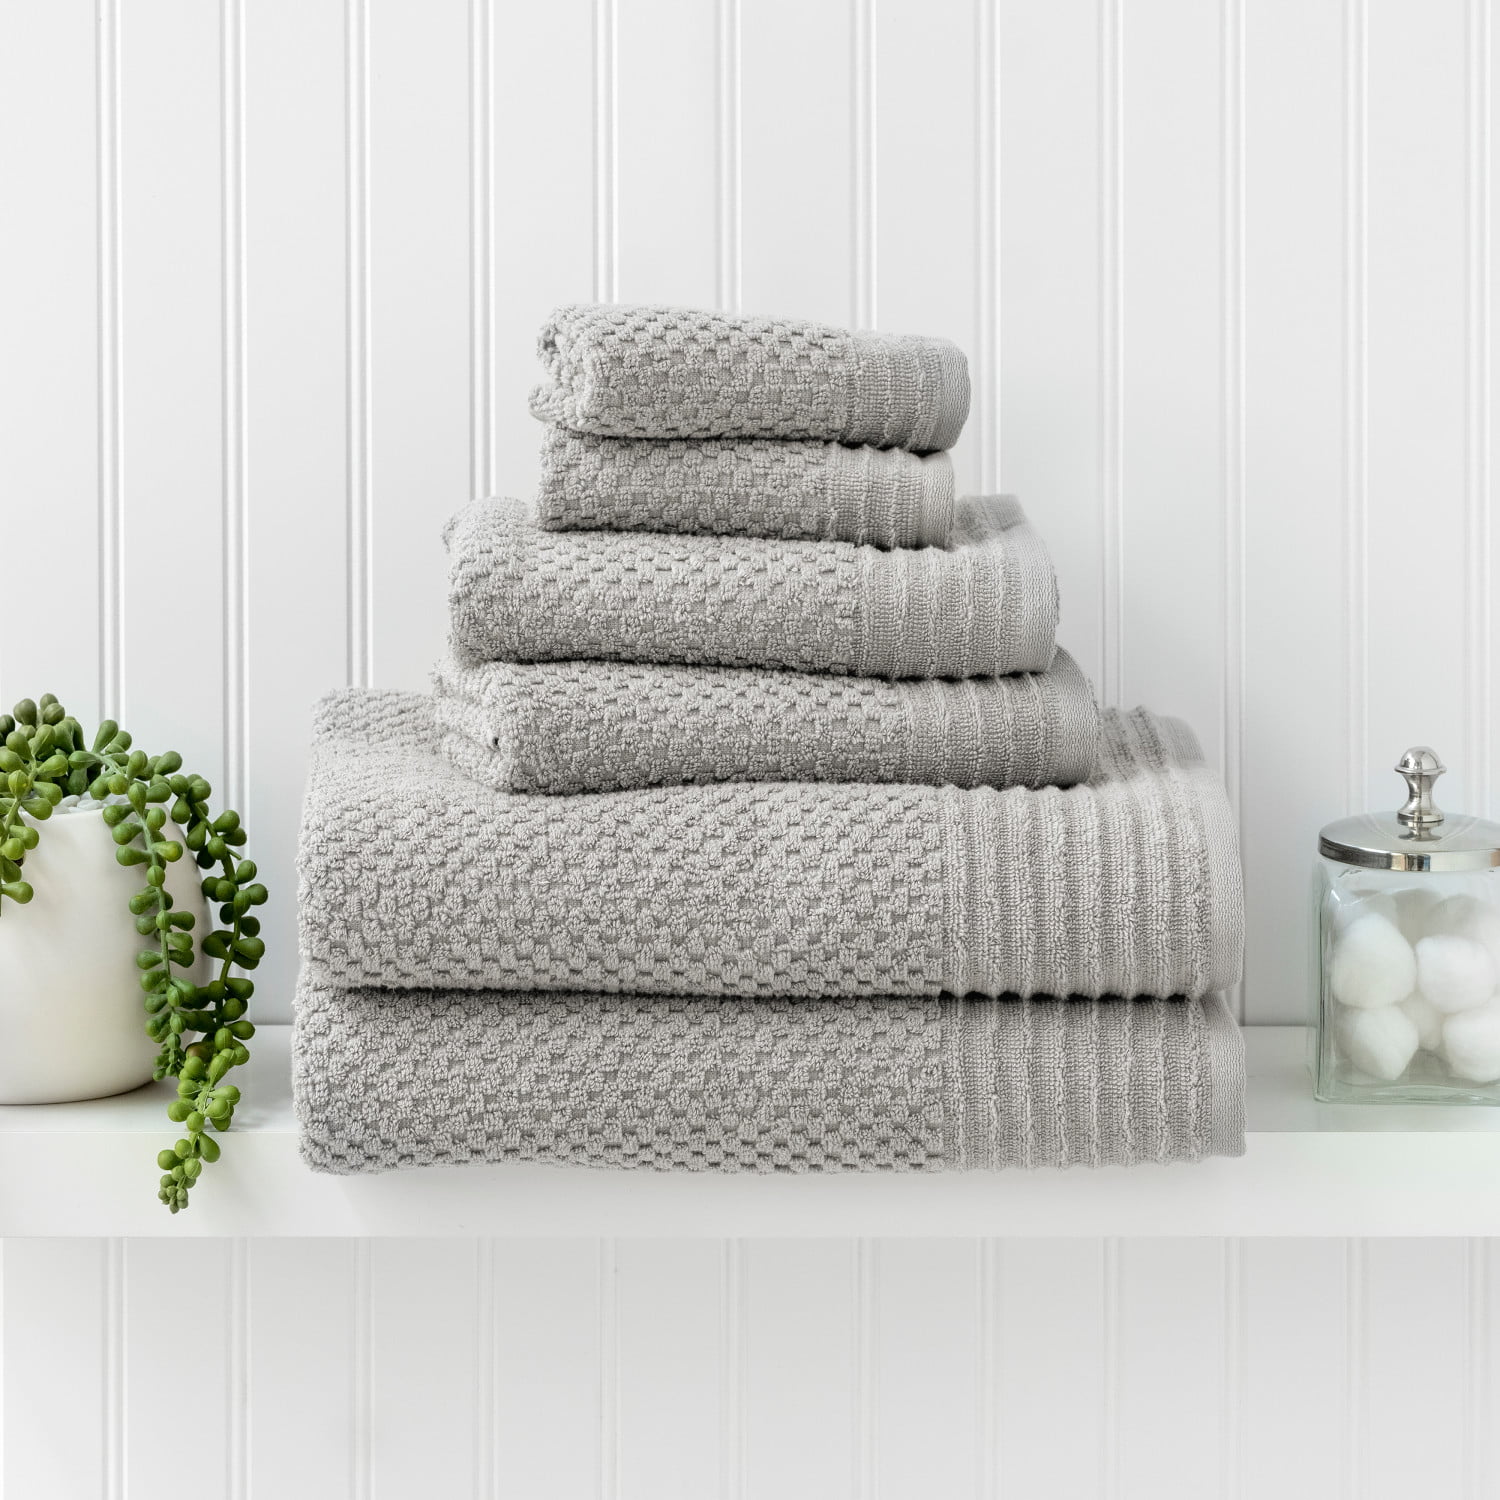 costcofindsca - This 6-pack @marthastewart kitchen towels